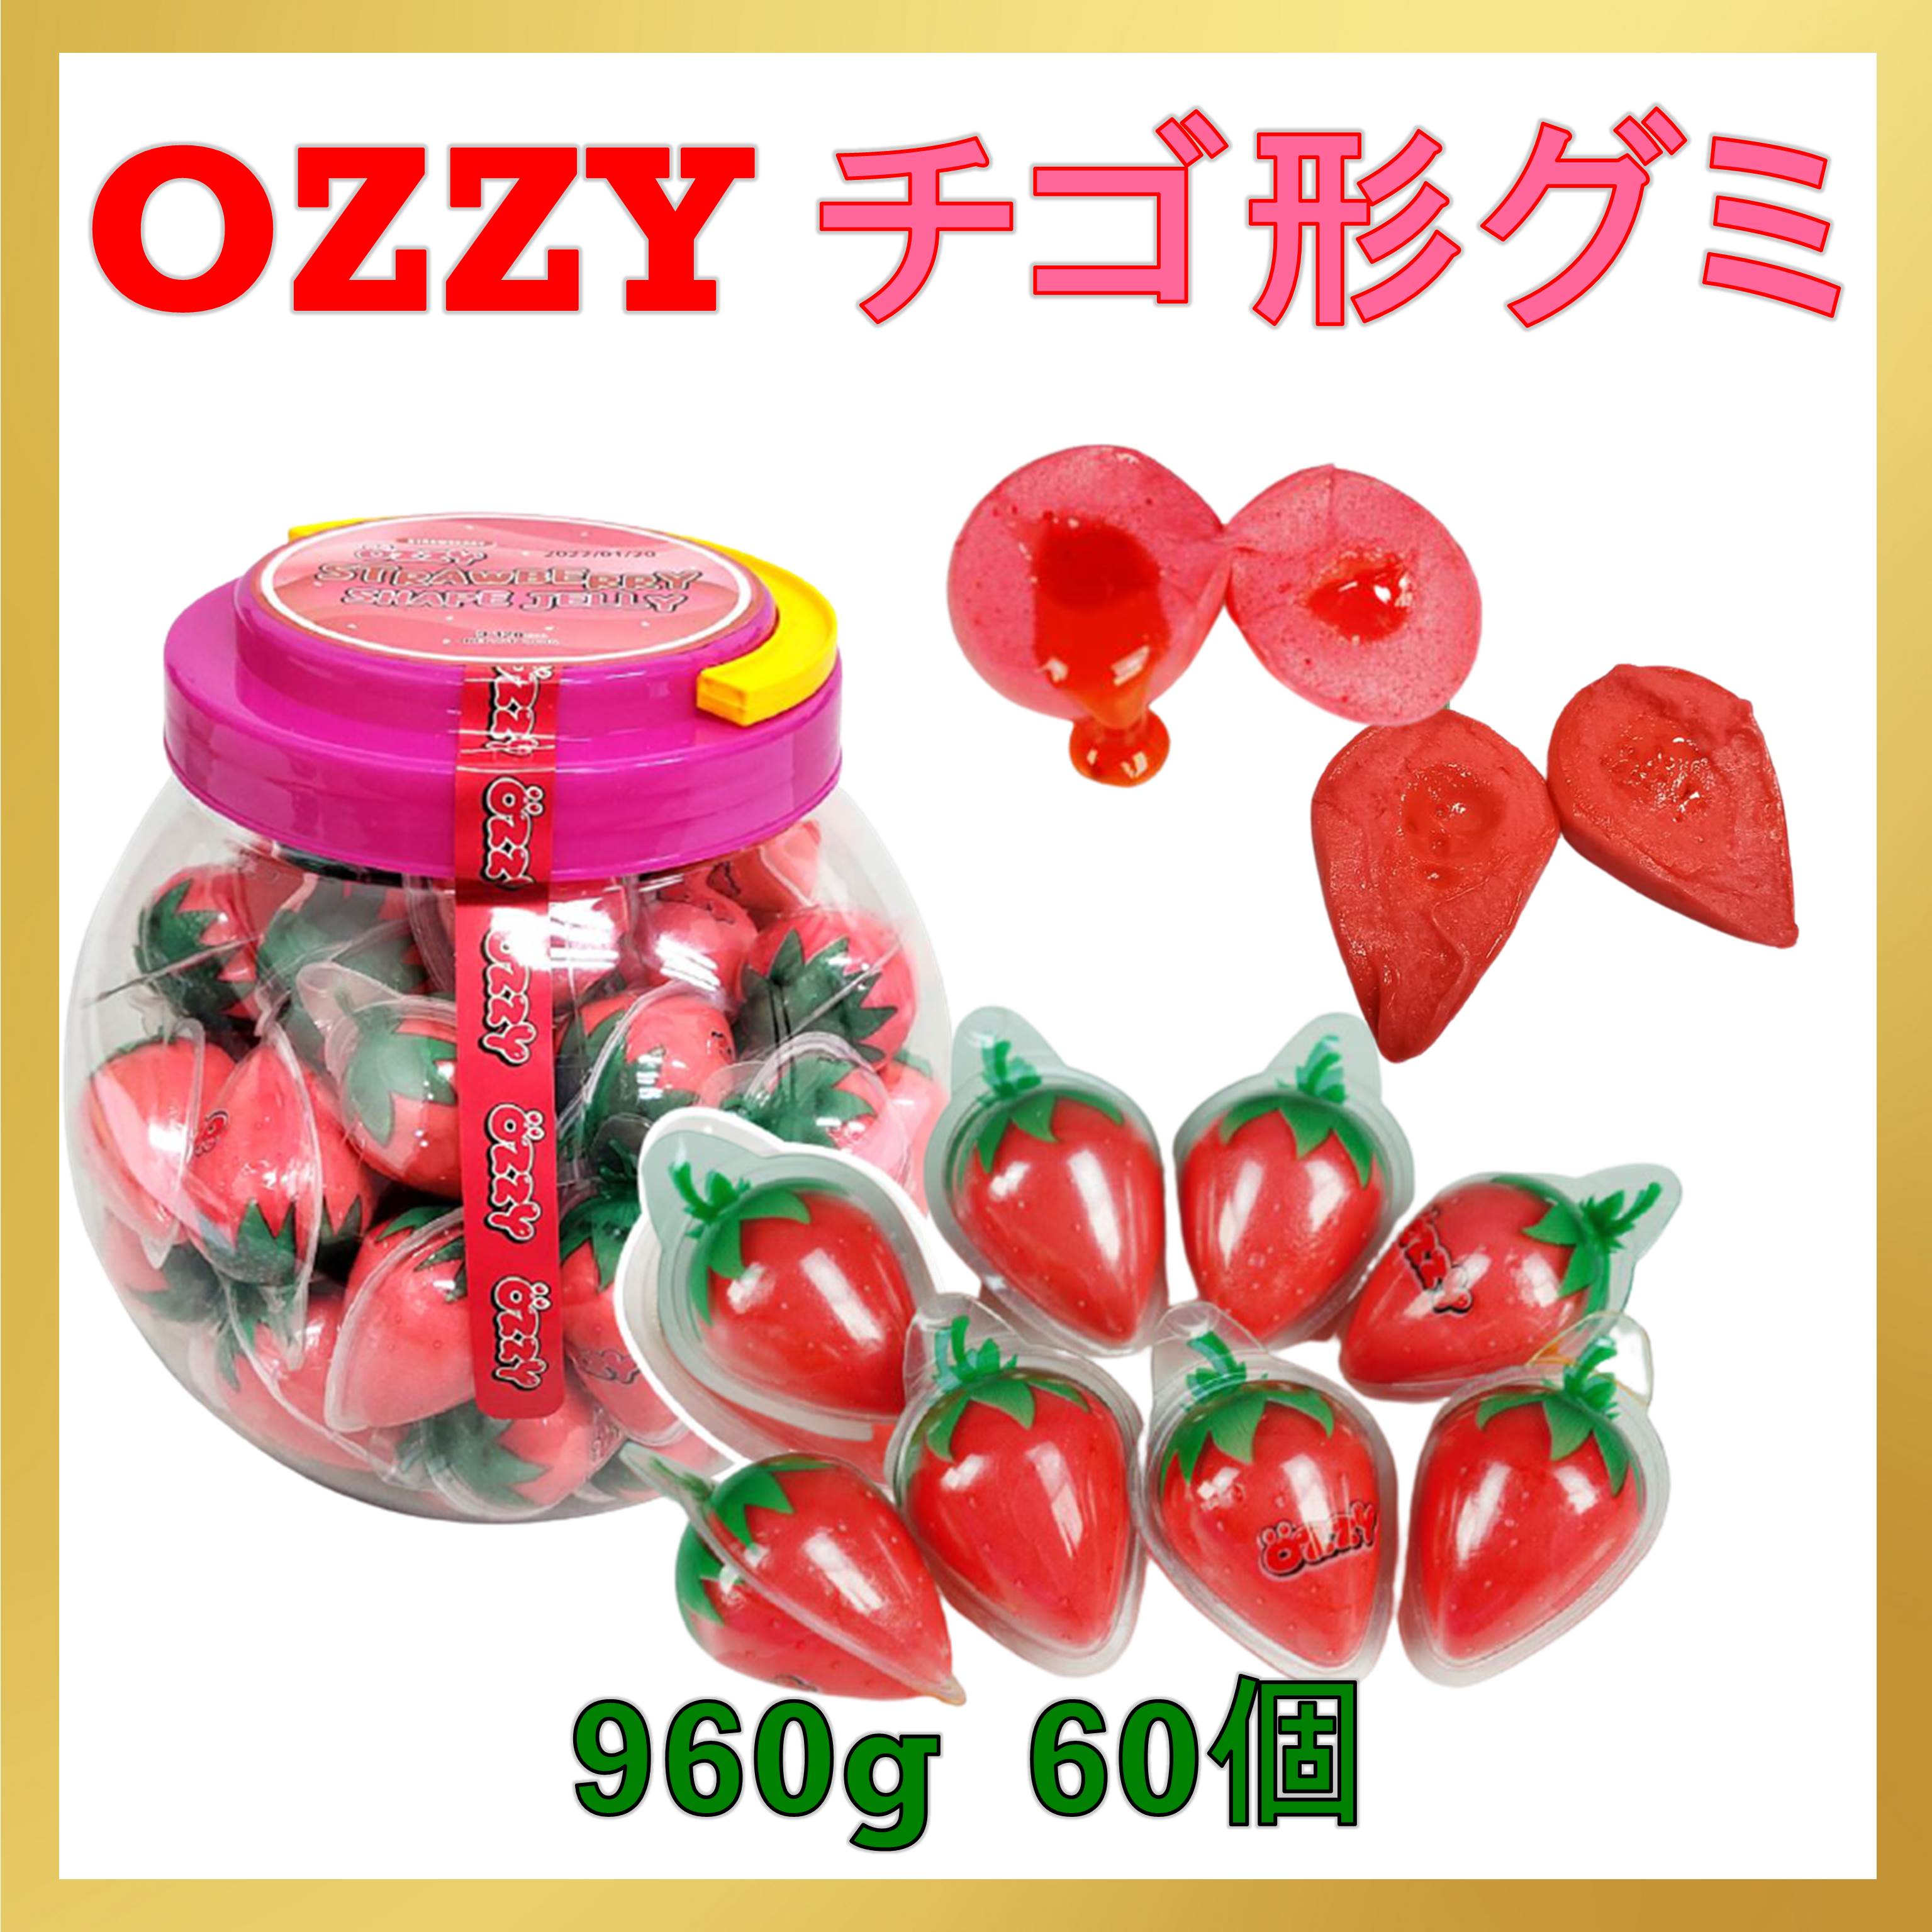 Ozzy オージー いちごグミ イチゴグミ60個×11ケース 正規品の+